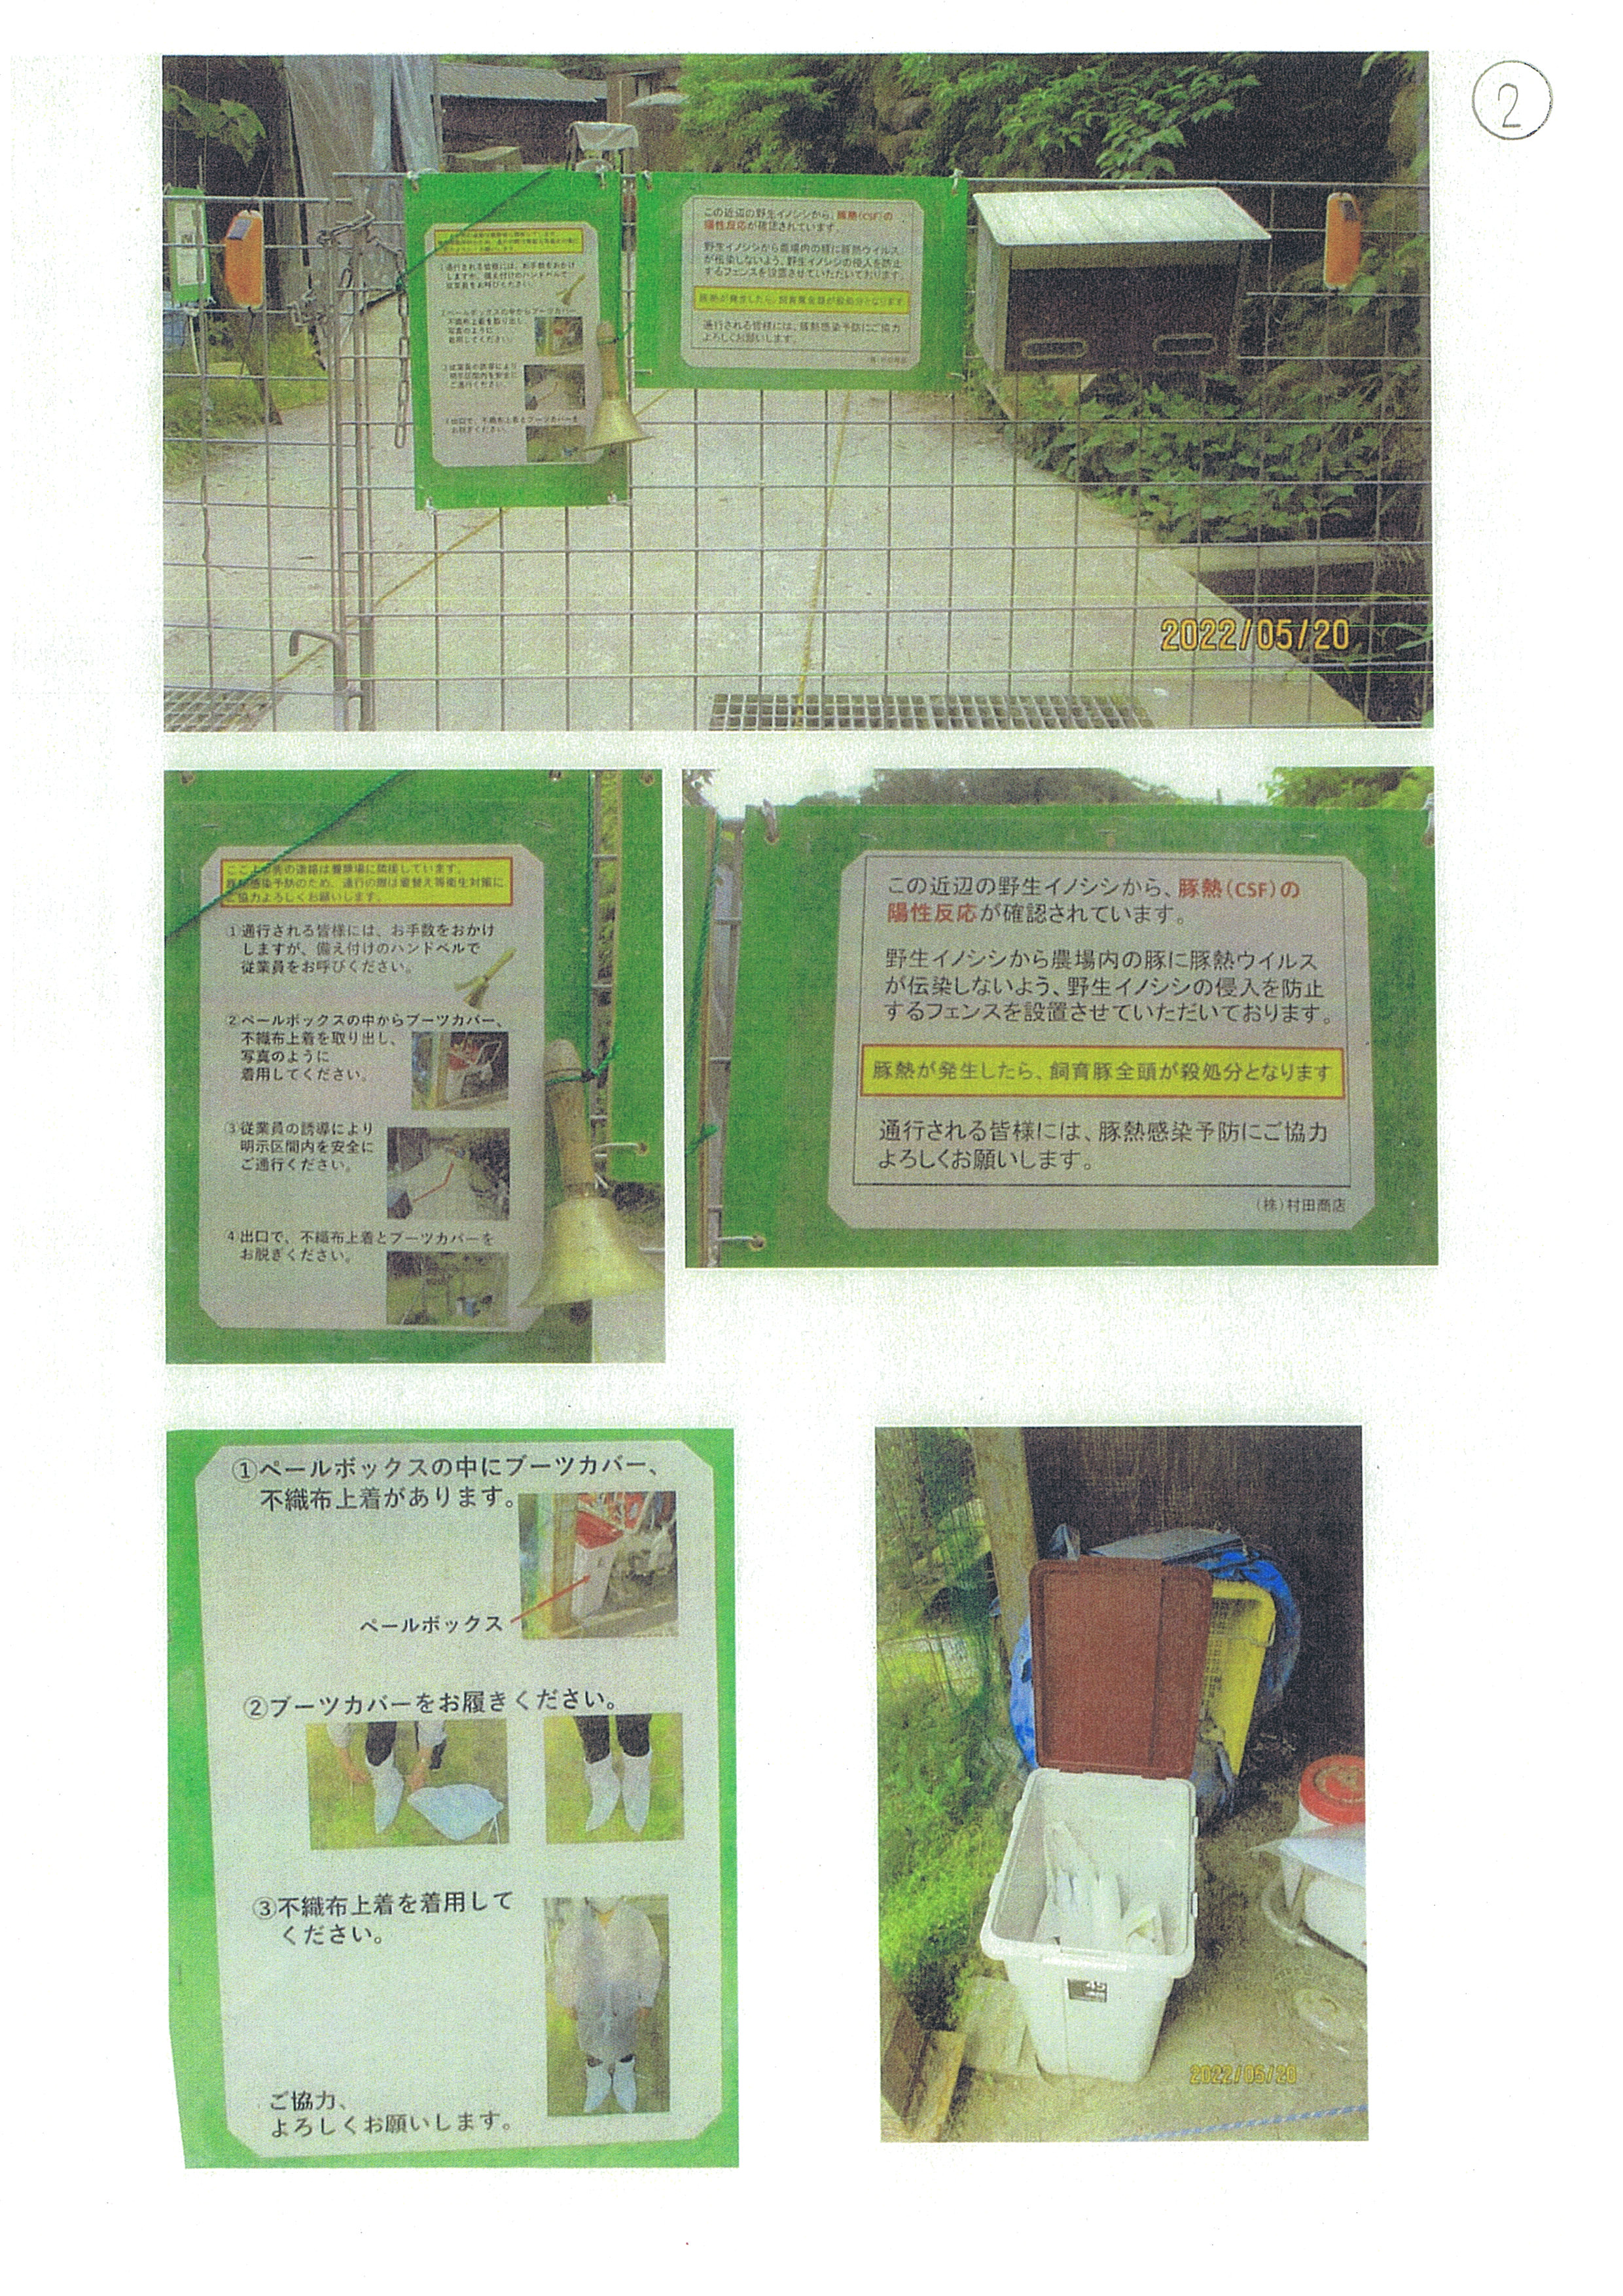 令和4年5月20日-村田商店防護柵への掲示物確認-04